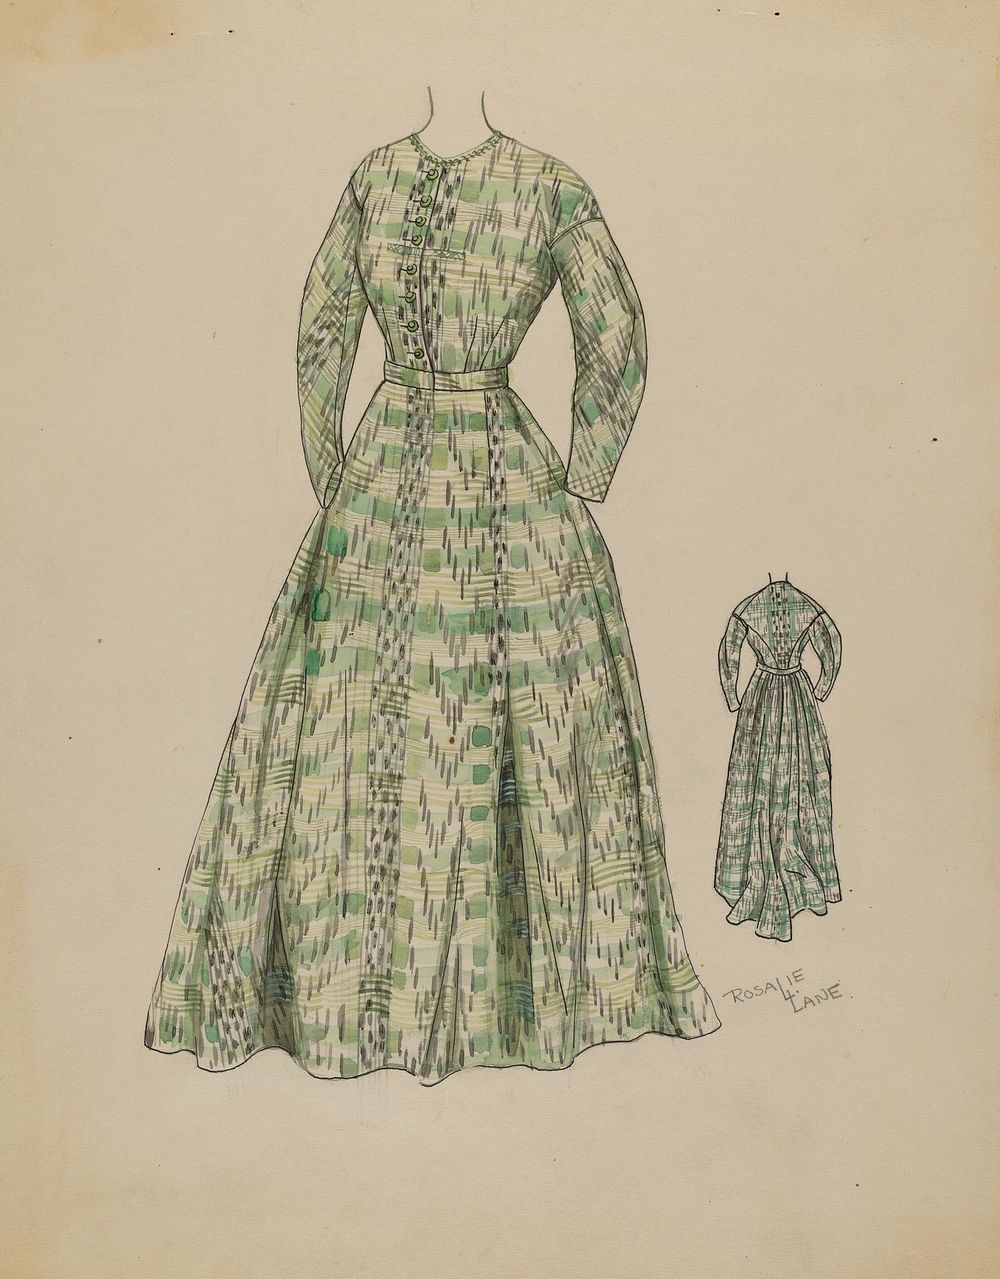 Dress (c. 1936) by Rosalia Lane.  